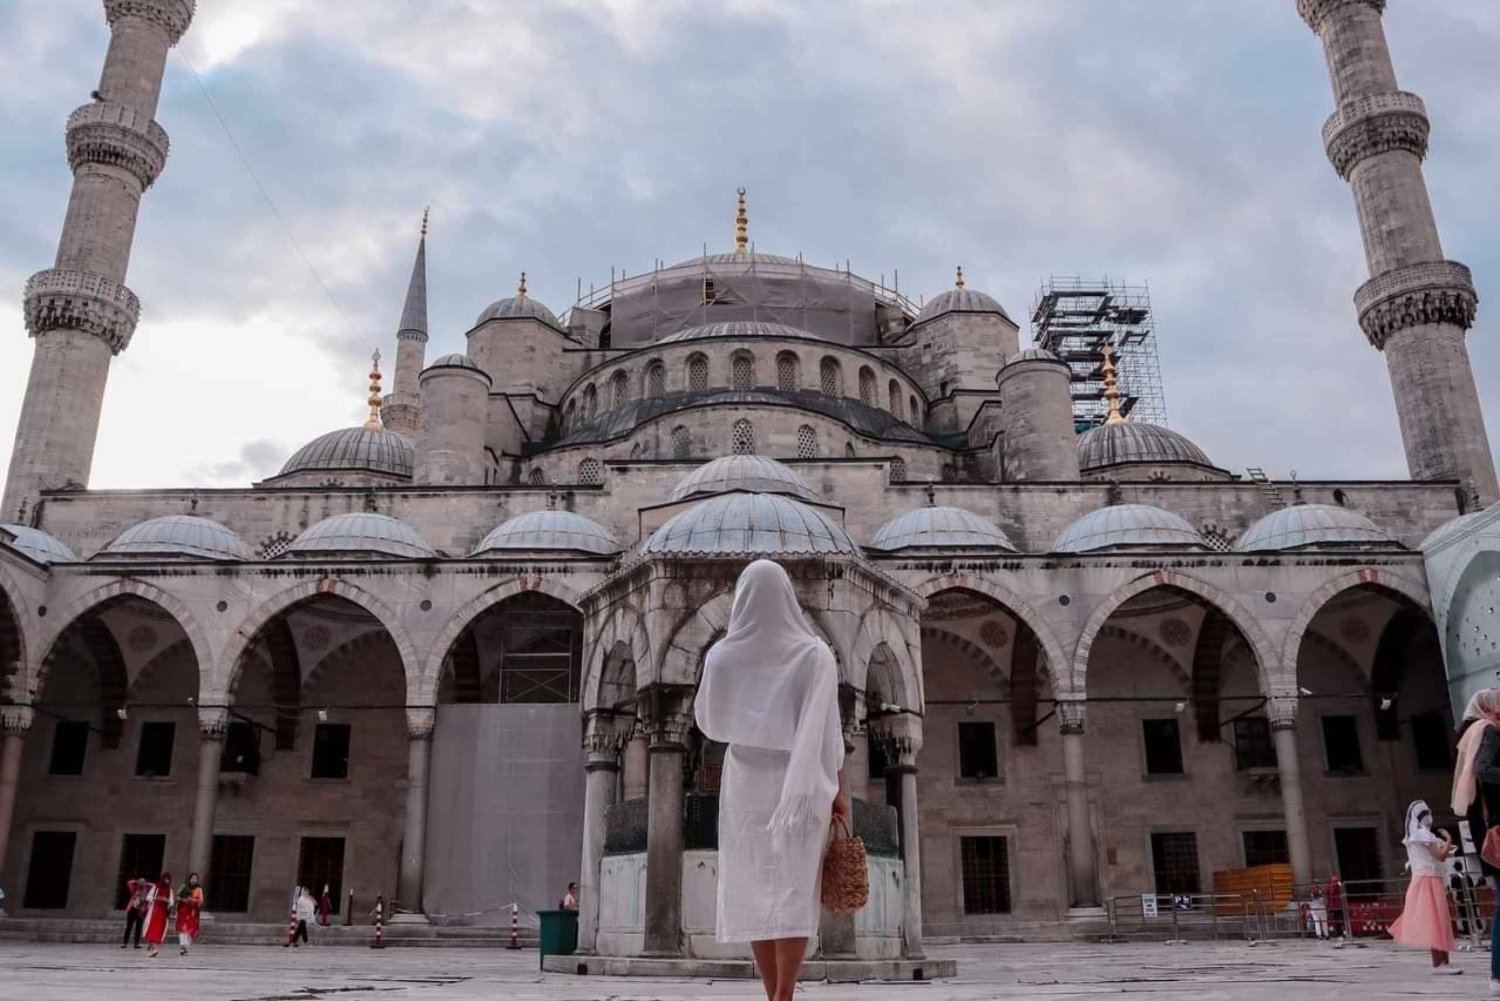 Istanbul-St Sophia, Blauwe Moskee, Rondleiding Hippodrome